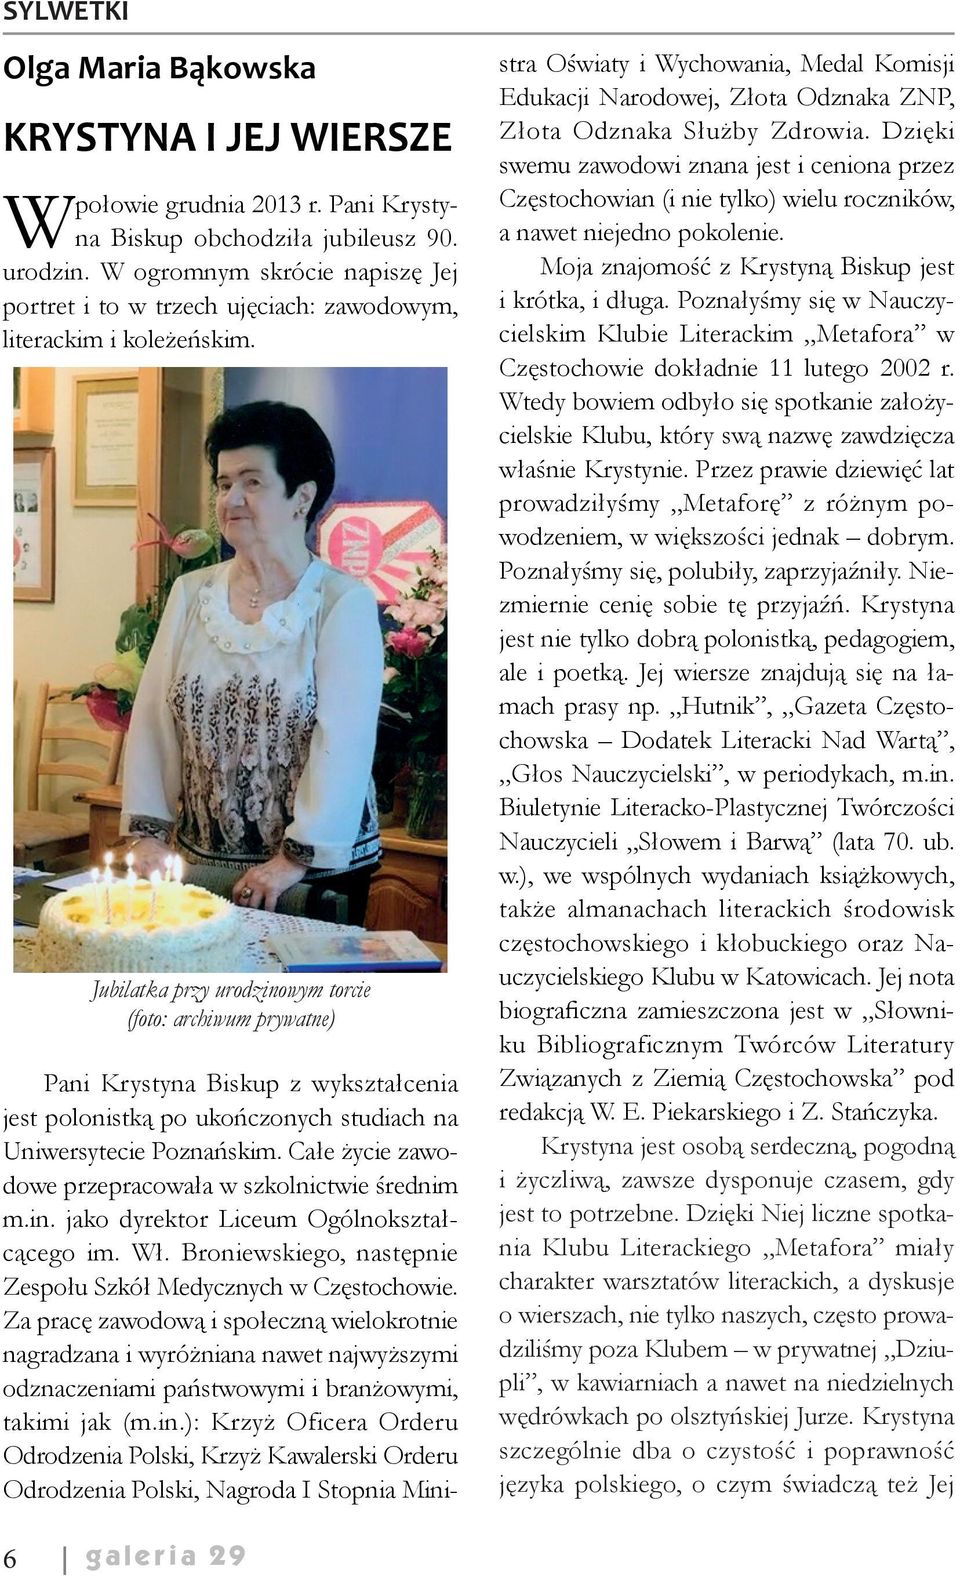 Jubilatka przy urodzinowym torcie (foto: archiwum prywatne) Pani Krystyna Biskup z wykształcenia jest polonistką po ukończonych studiach na Uniwersytecie Poznańskim.